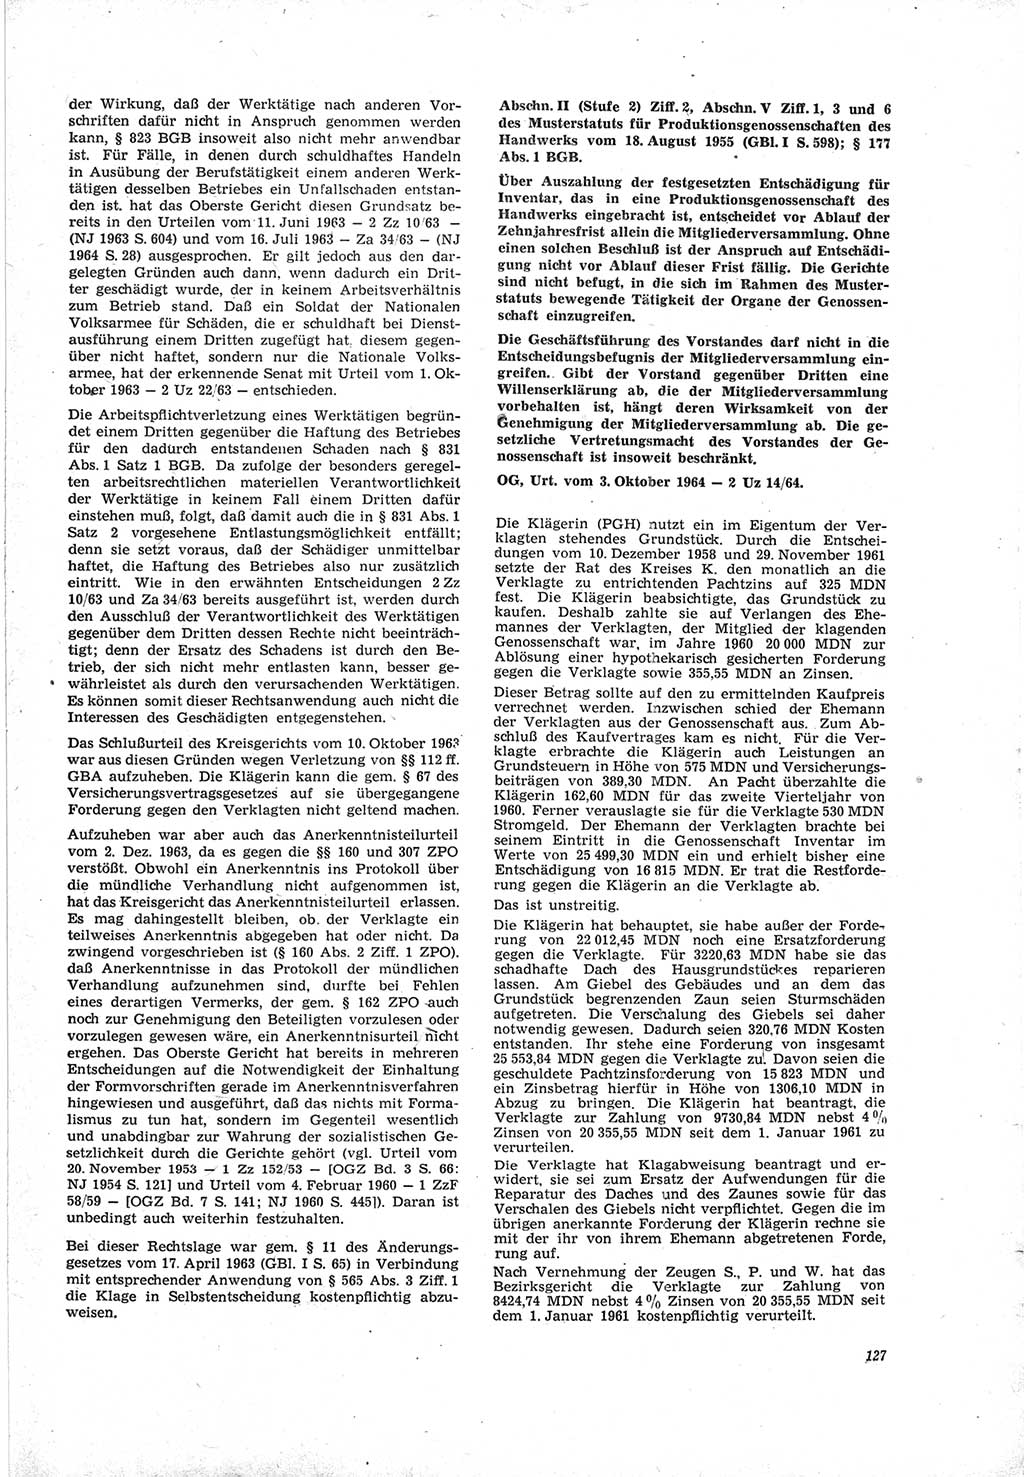 Neue Justiz (NJ), Zeitschrift für Recht und Rechtswissenschaft [Deutsche Demokratische Republik (DDR)], 19. Jahrgang 1965, Seite 127 (NJ DDR 1965, S. 127)